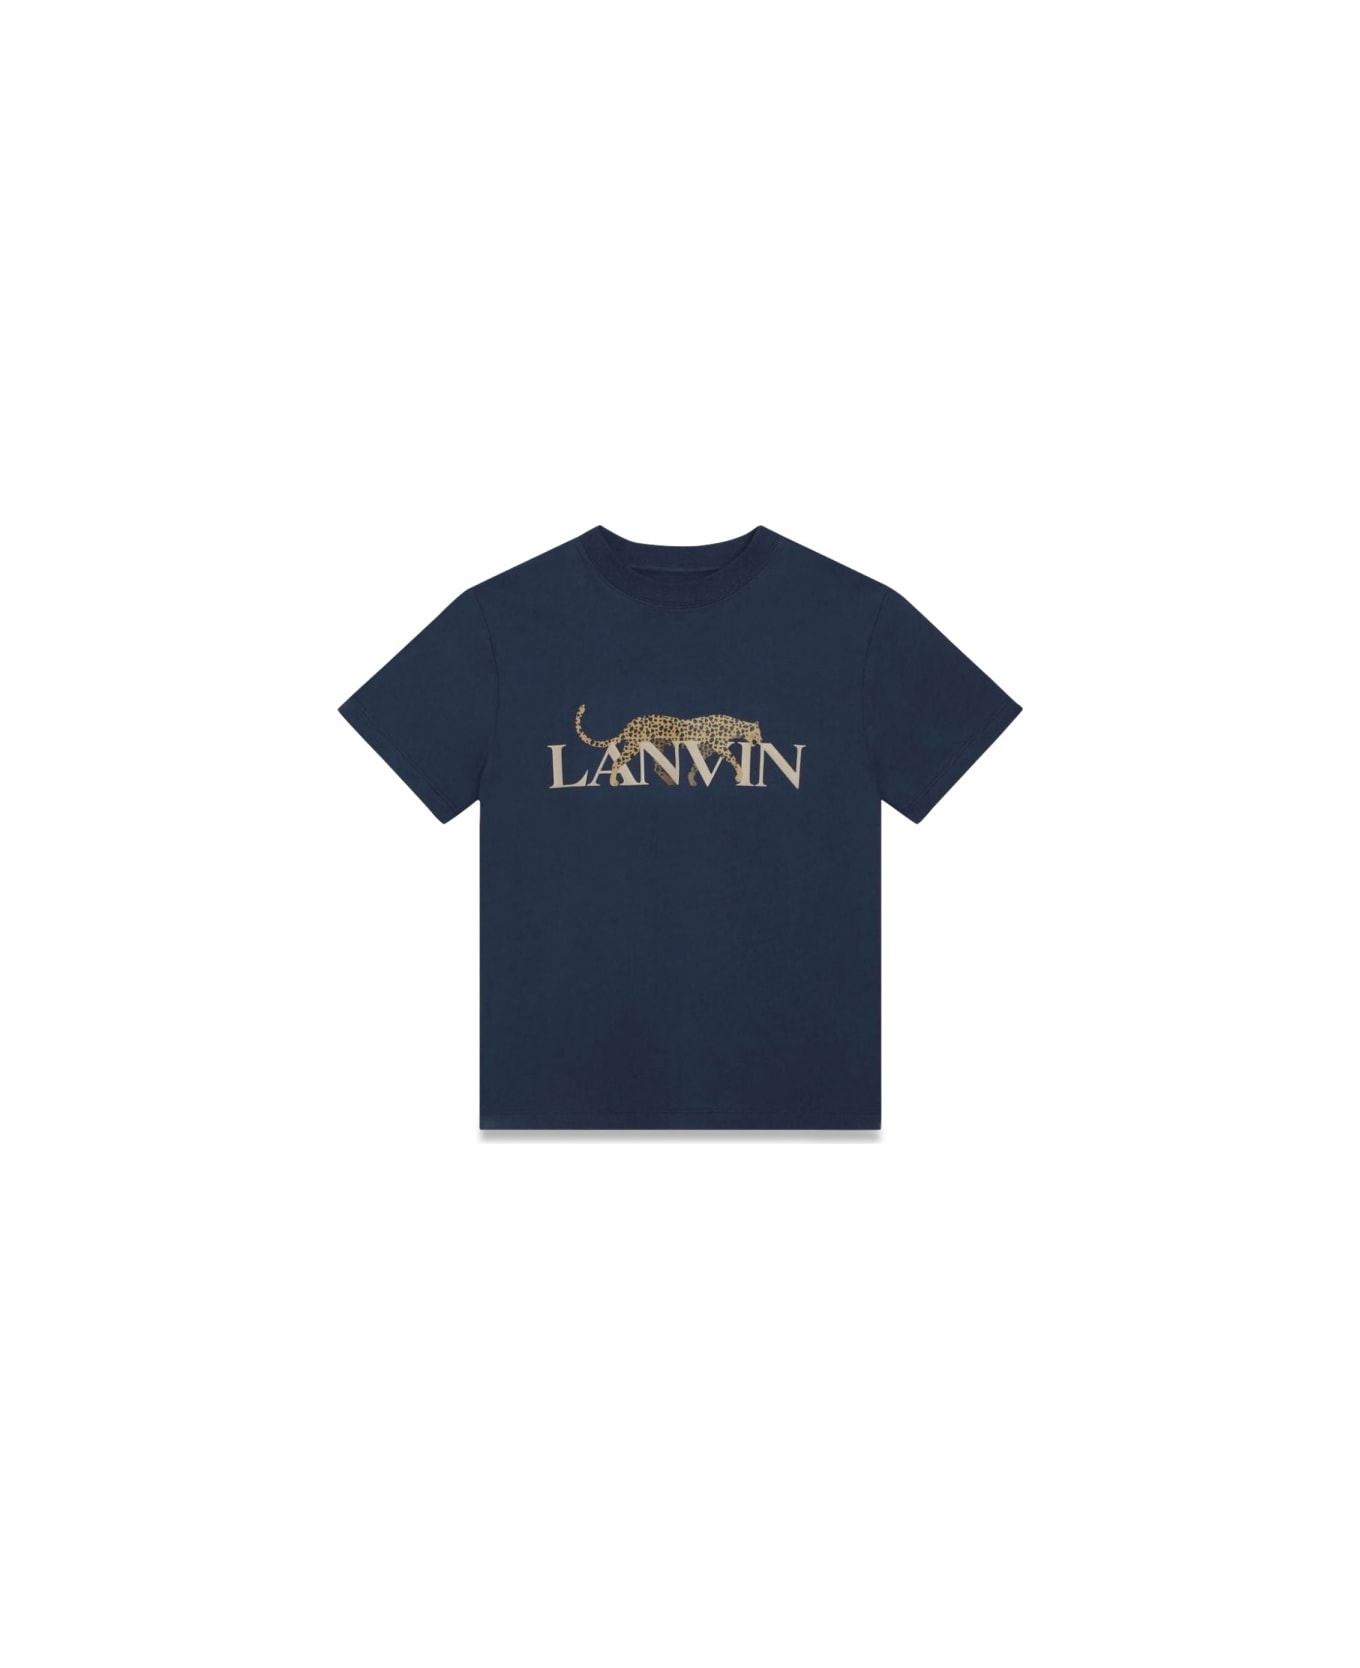 Lanvin Tee Shirt - BLUE